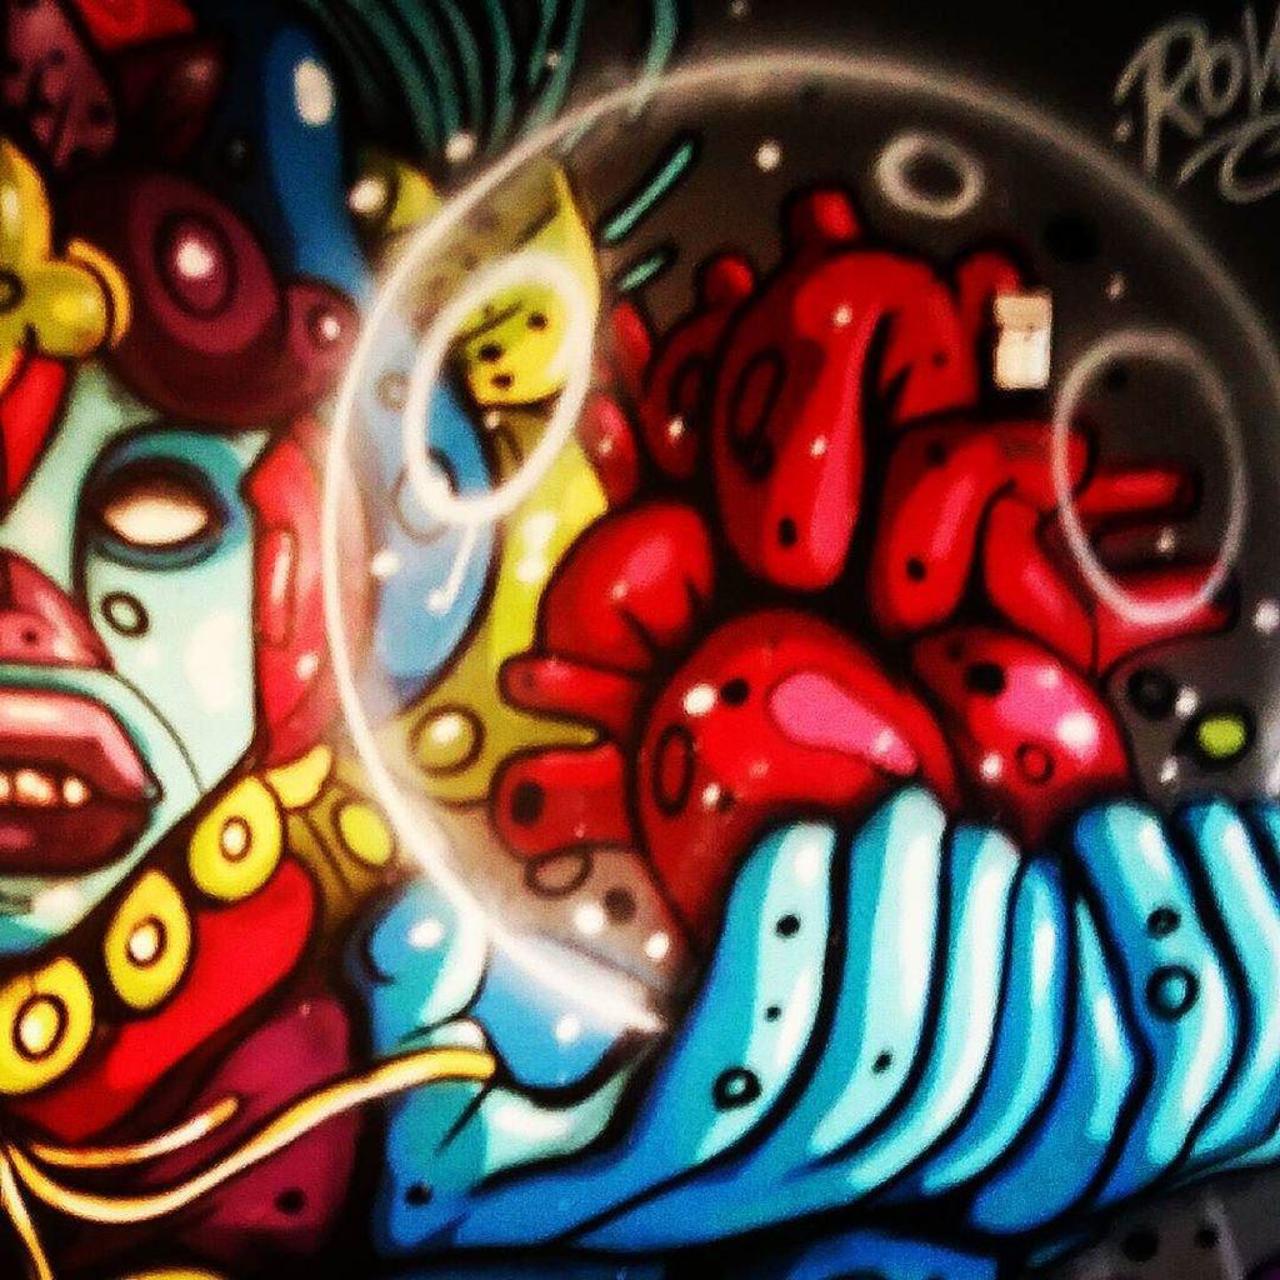 via #dermartin301 "http://bit.ly/1PaH4J6" #graffiti #streetart http://t.co/fkdS7L07yN